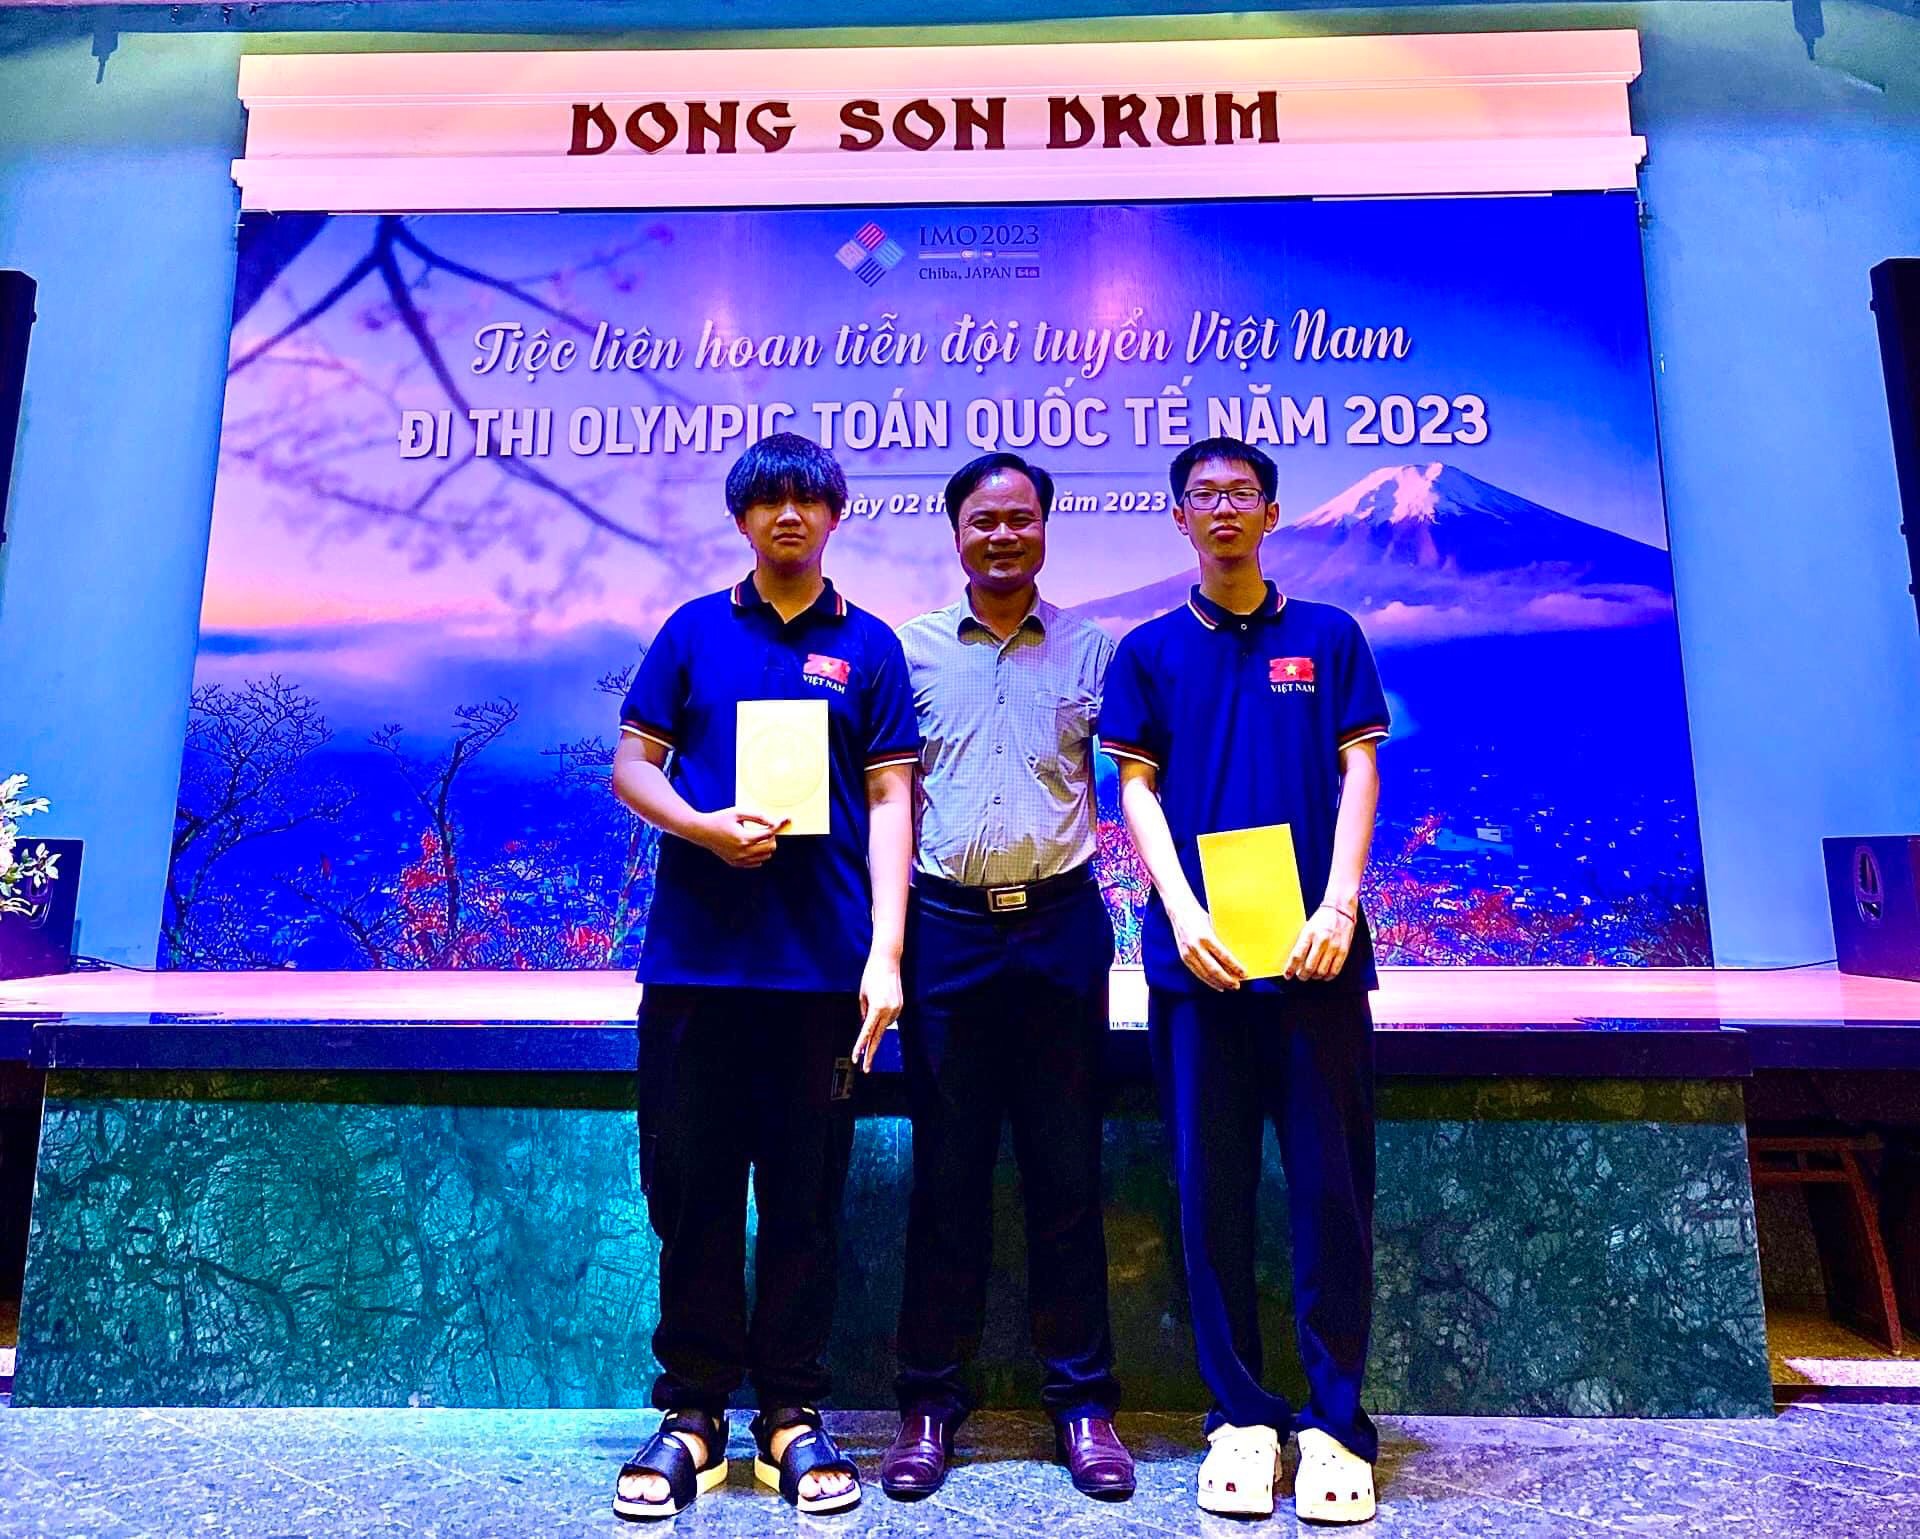 Hải Phòng: Hai học sinh Trường Chuyên Trần Phú đoạt huy chương 1 vàng, 1 bạc Olympic Toán Quốc tế  - Ảnh 1.